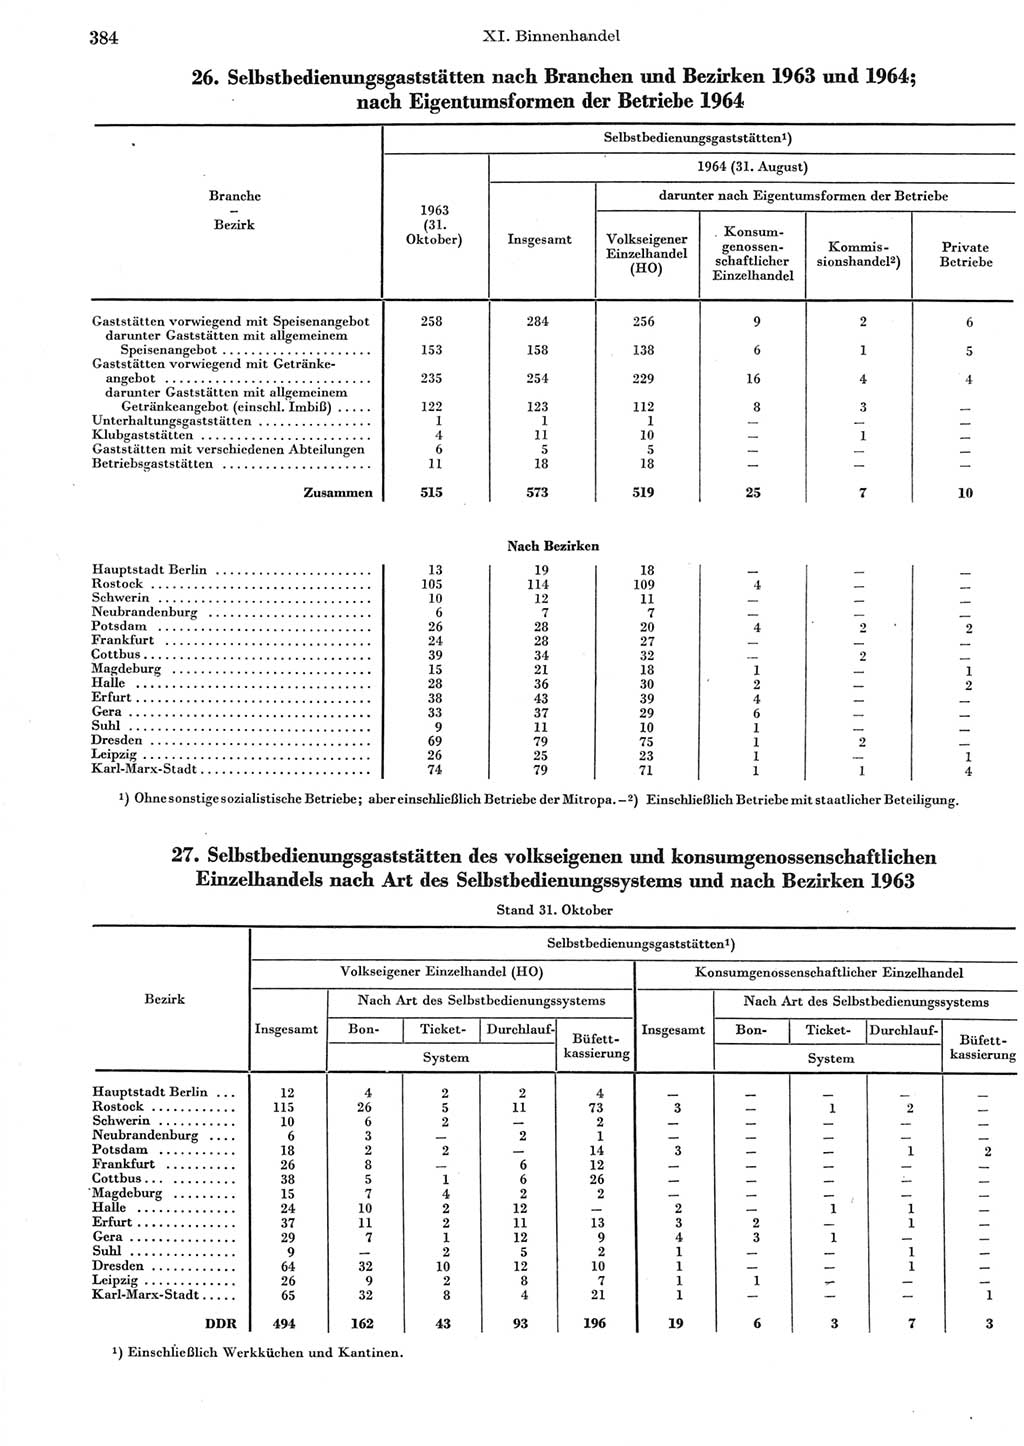 Statistisches Jahrbuch der Deutschen Demokratischen Republik (DDR) 1965, Seite 384 (Stat. Jb. DDR 1965, S. 384)